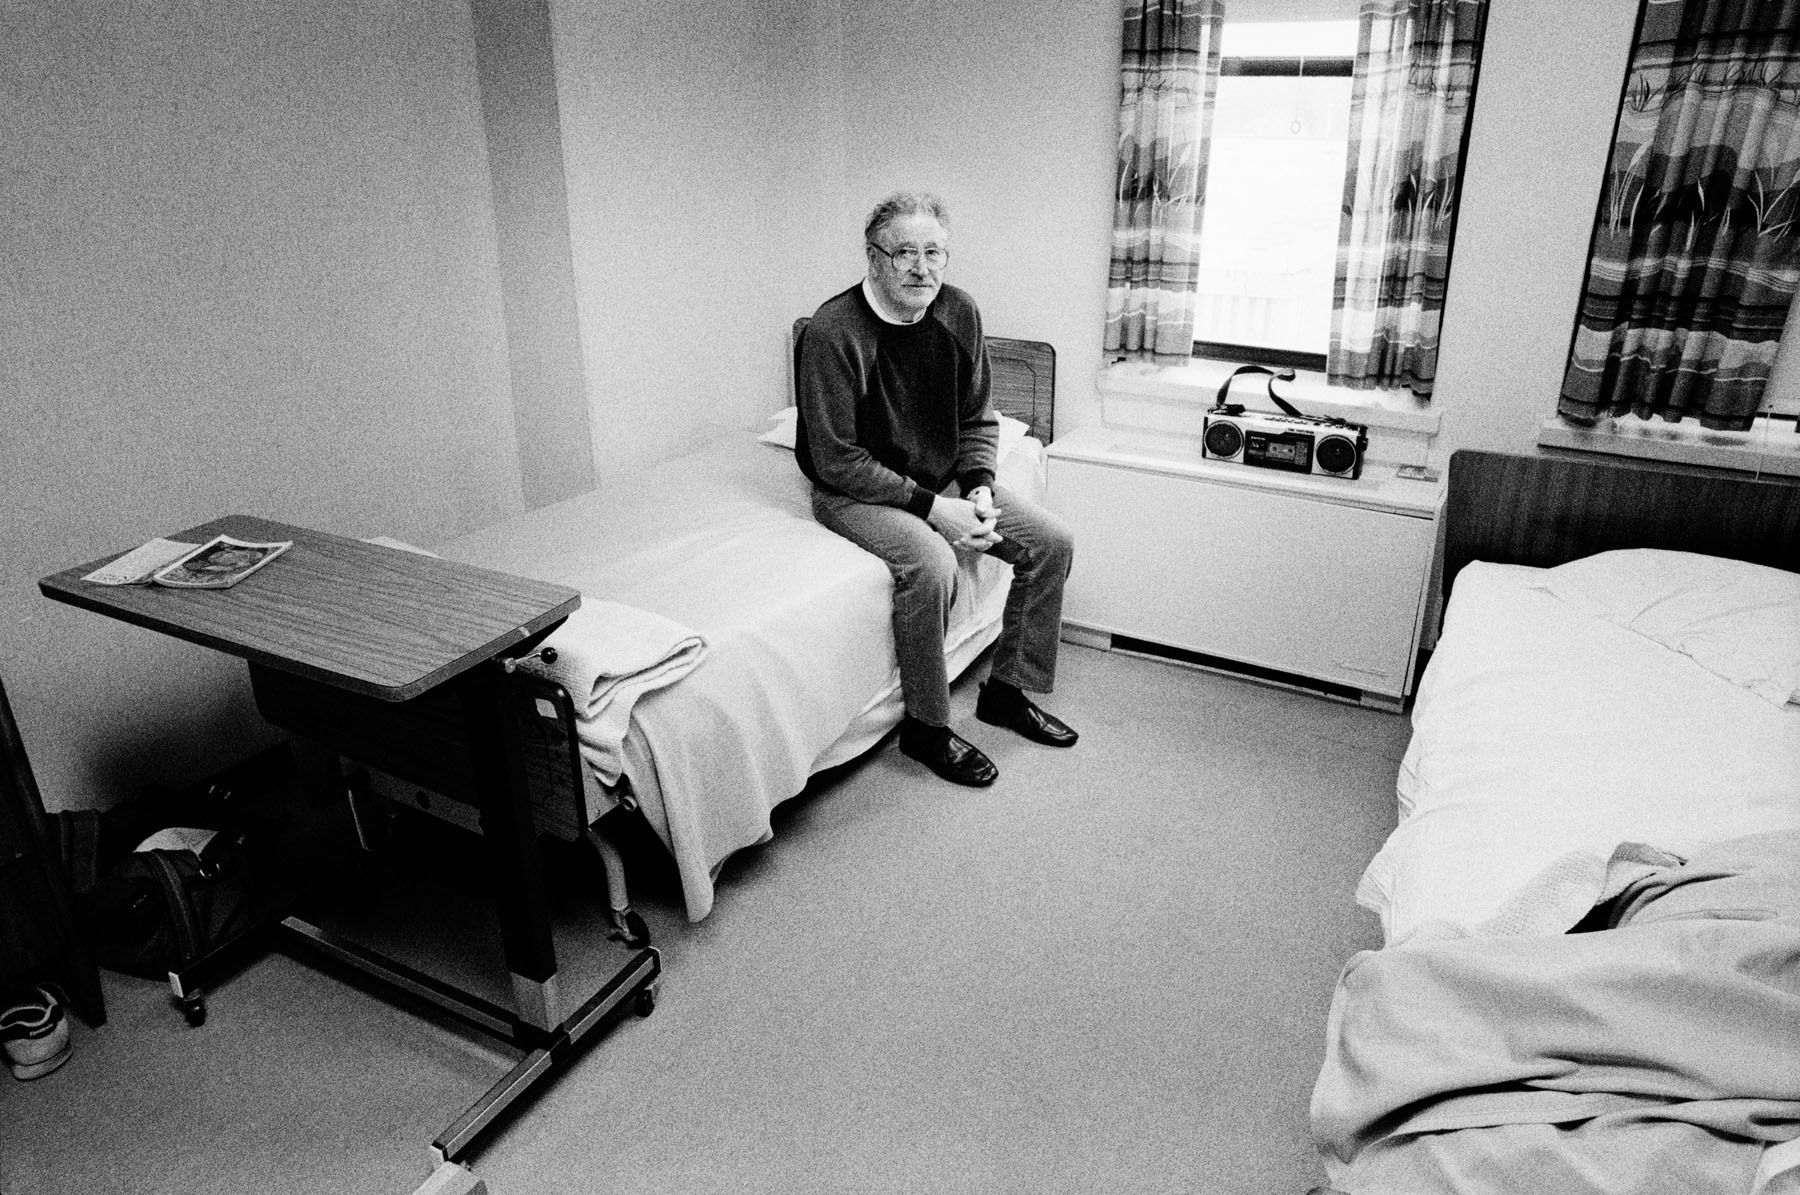 Mercy Medical Center, 4 North, Psychiatric Ward, Oshkosh, WI, 1991